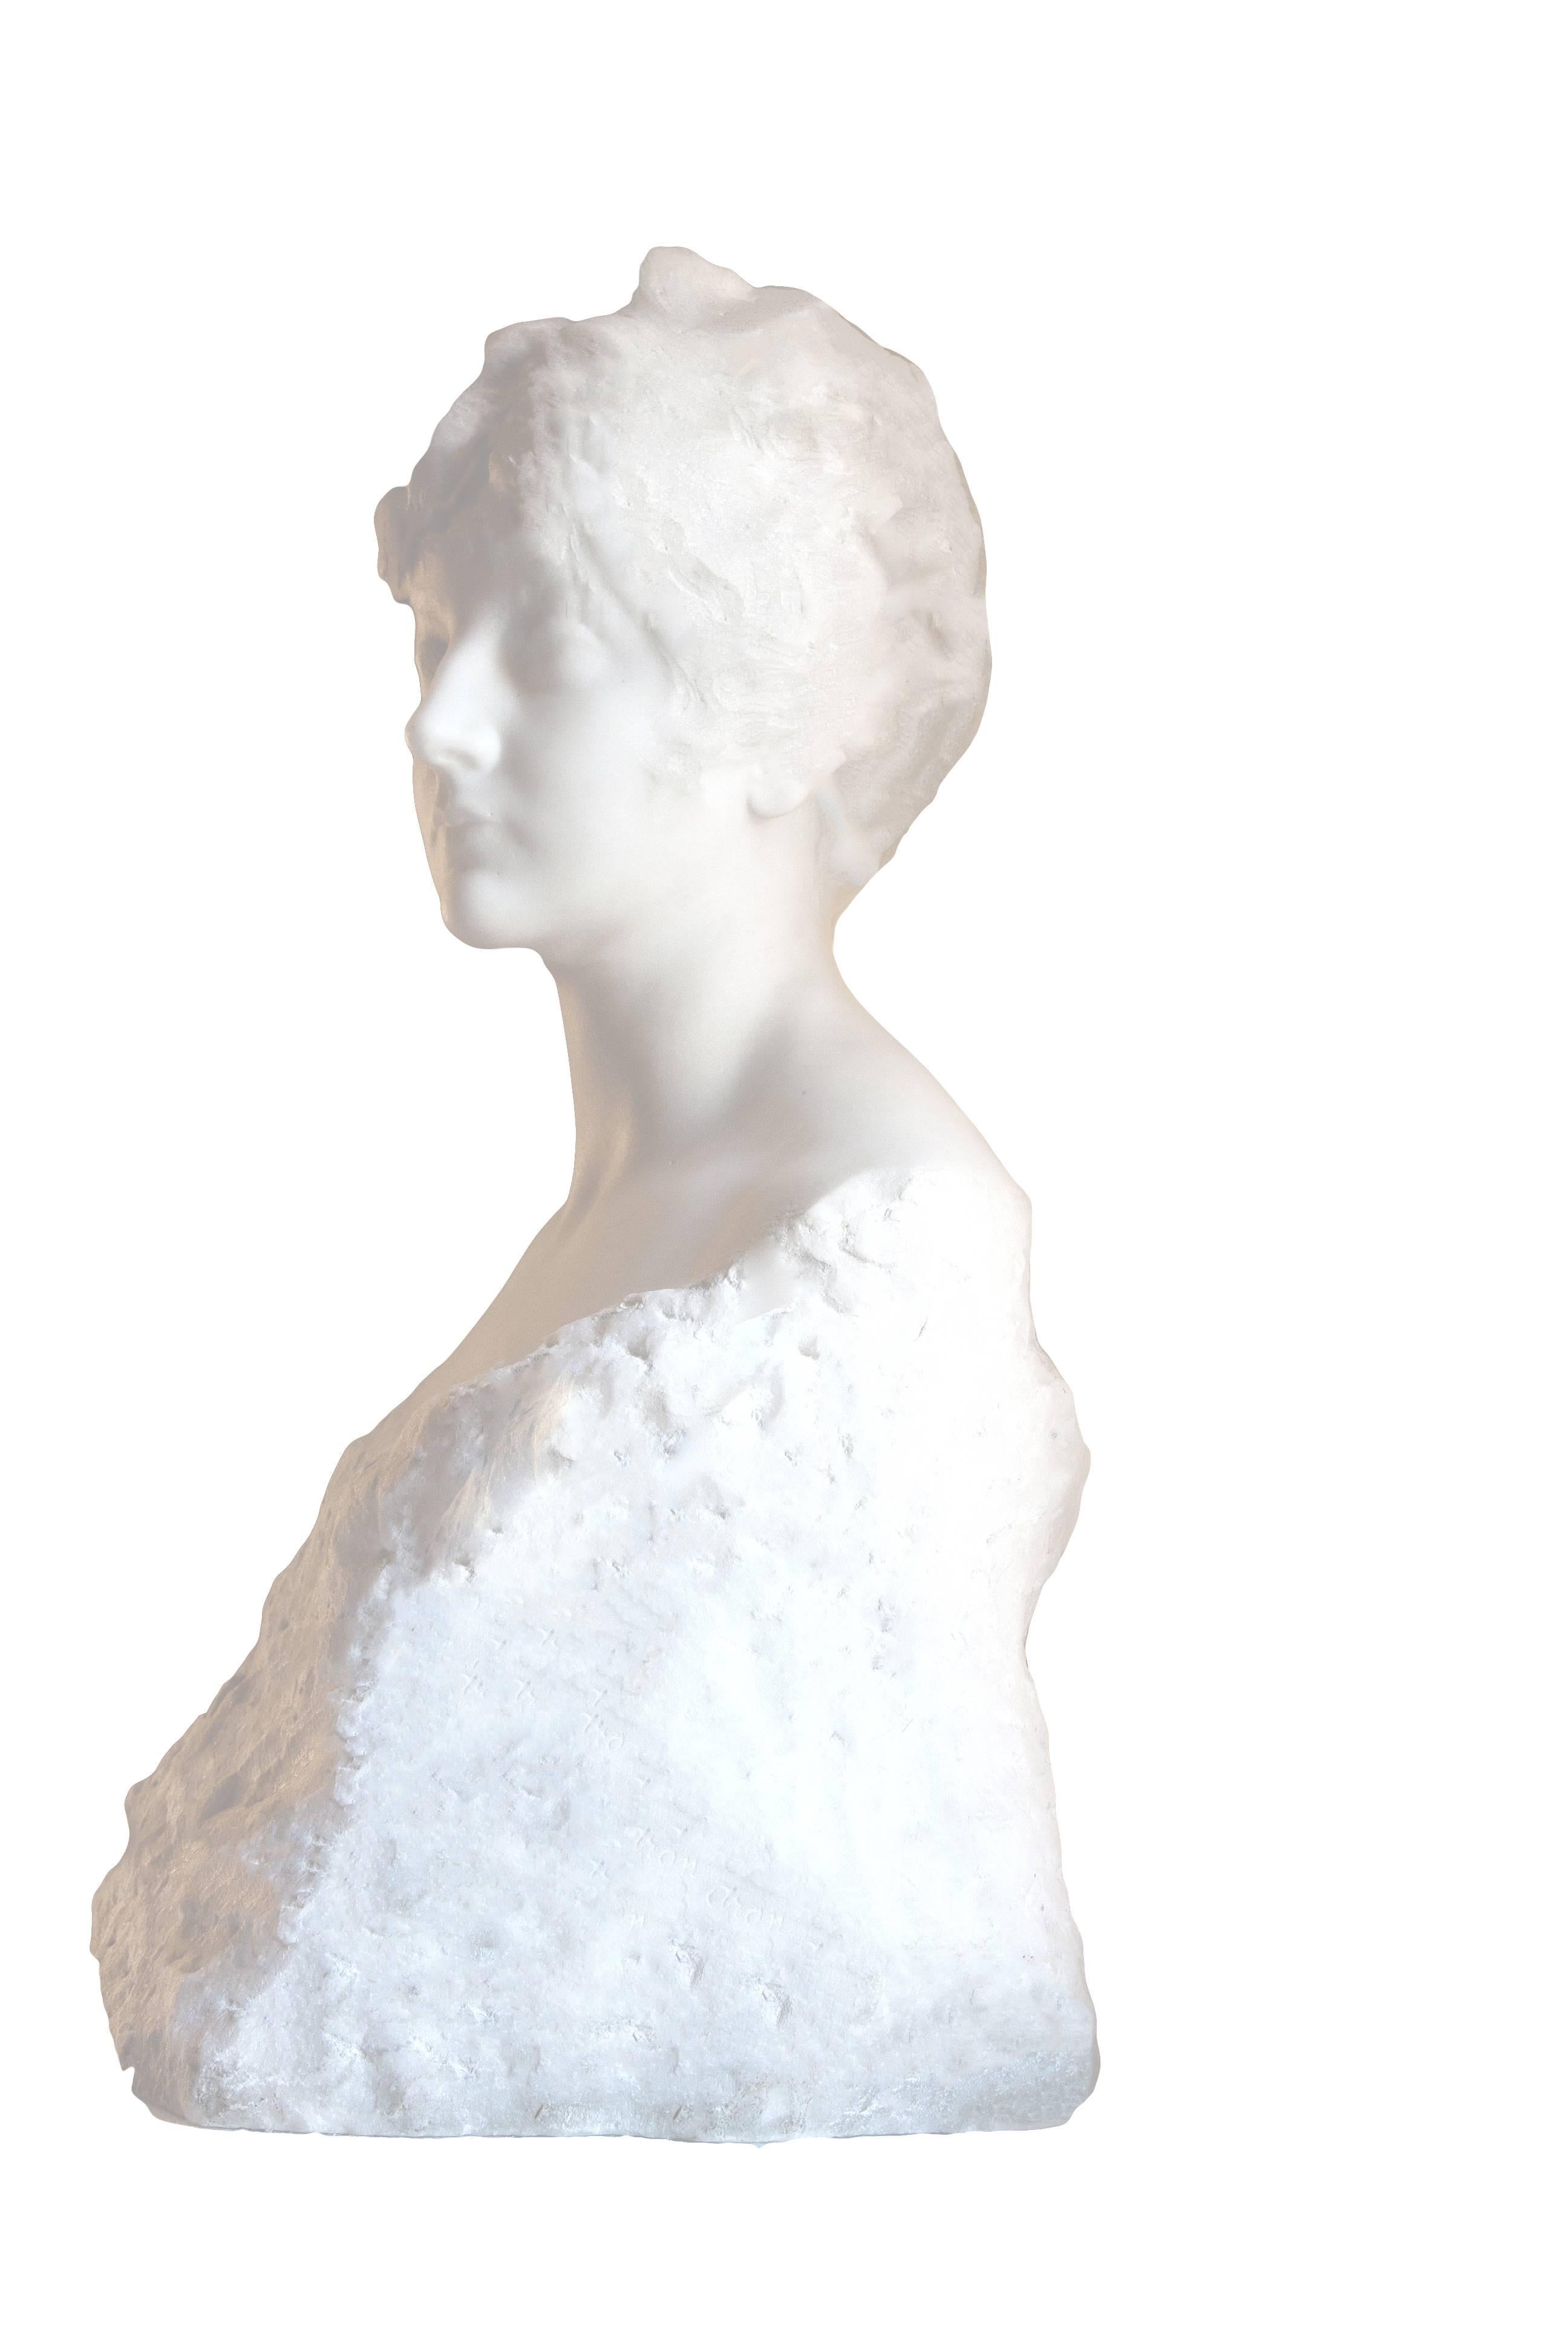 Naum Aronson Nude Sculpture - Bust of a Beauty